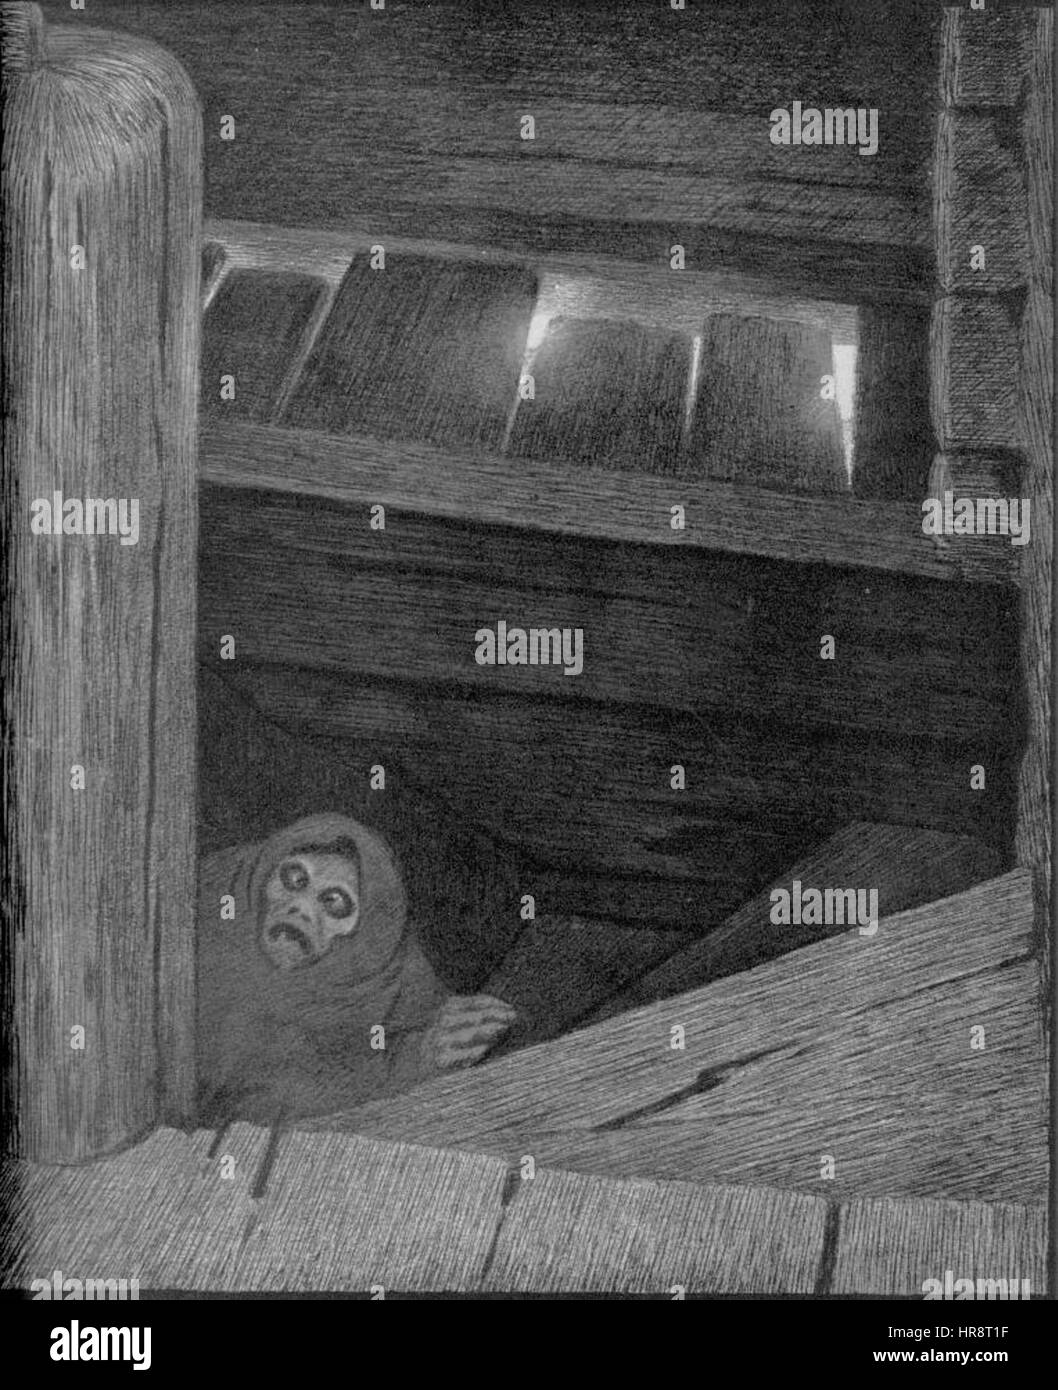 Theodor Kittelsen - Pesta i trappen, 1896 (Pesta on the Stairs) Stock Photo